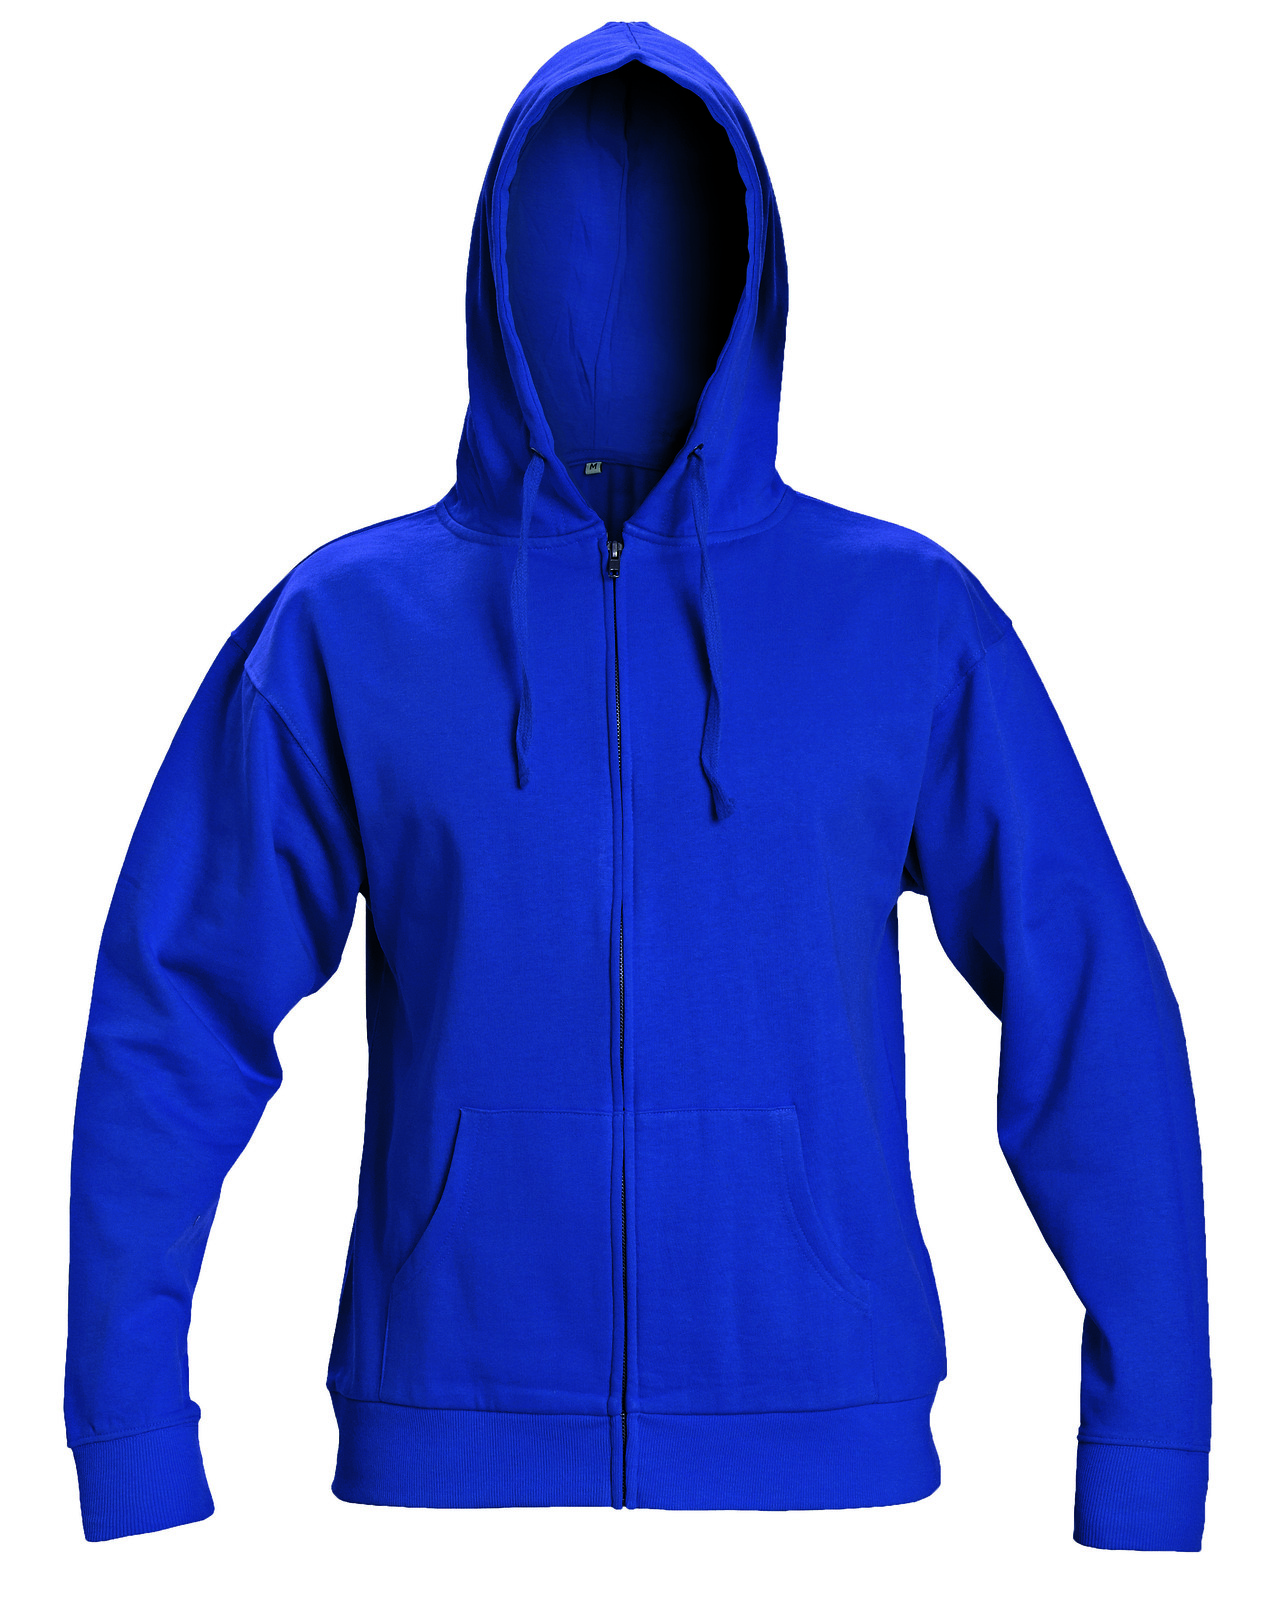 Mikina s kapucňou Nagar - veľkosť: L, farba: modrá